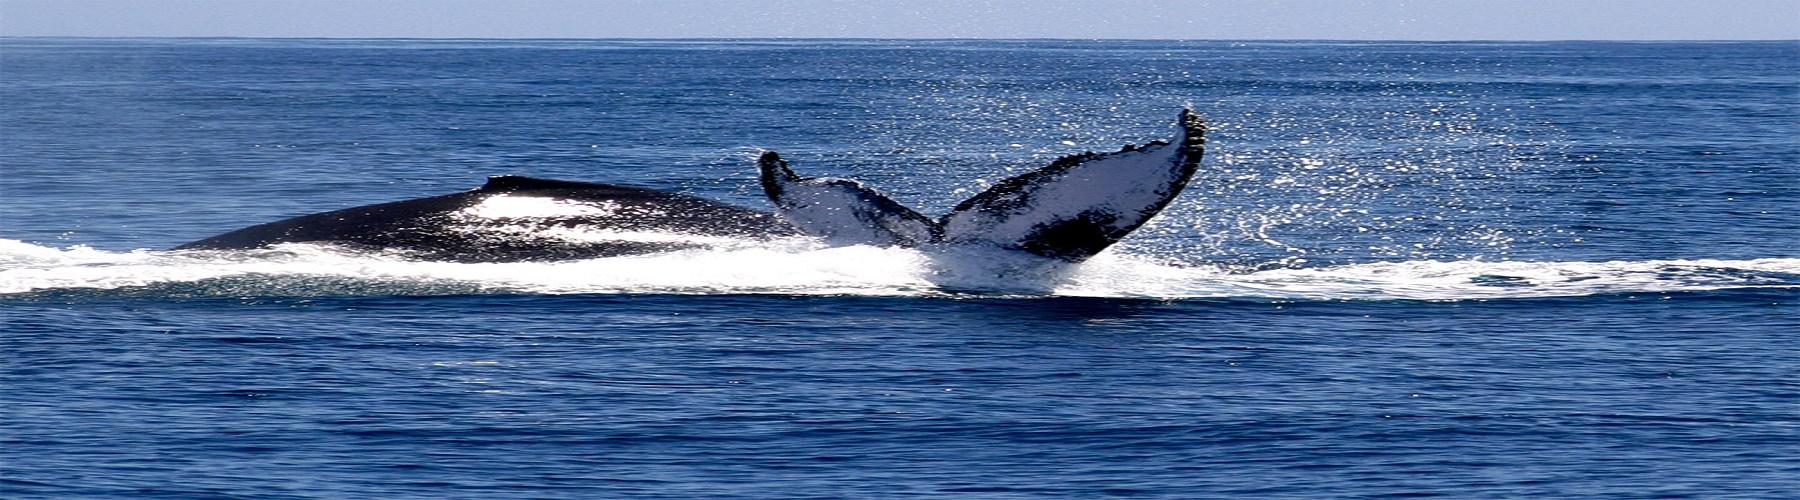 Горбатые киты в Доминикане